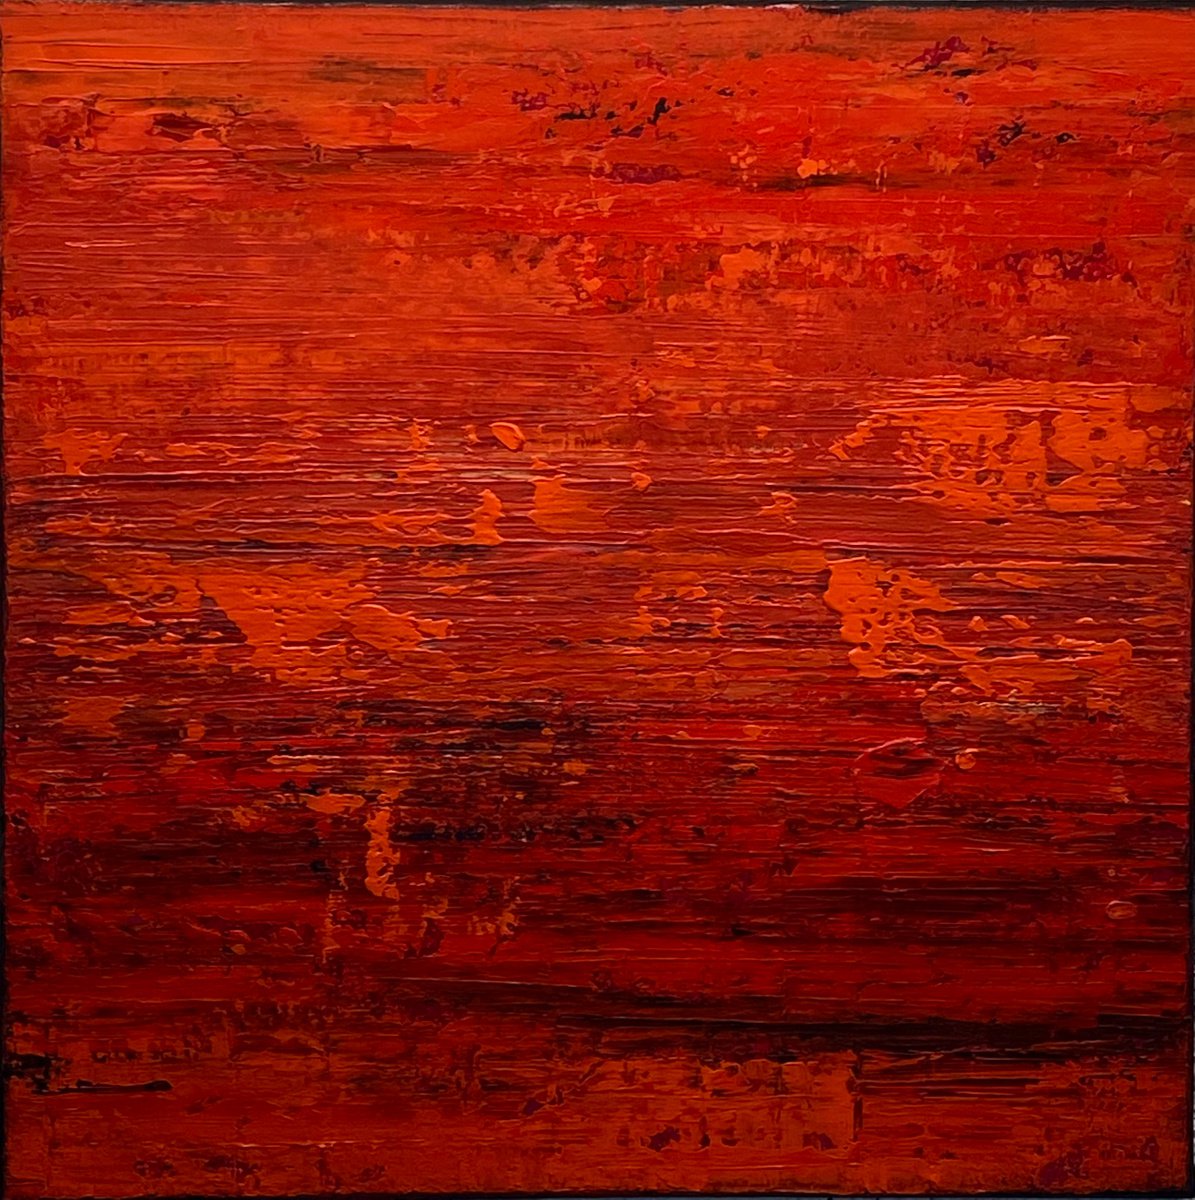 Red Hot Lava 1 (Textured abstract art - Ready to hang) by Klara Gunnlaugsdottir